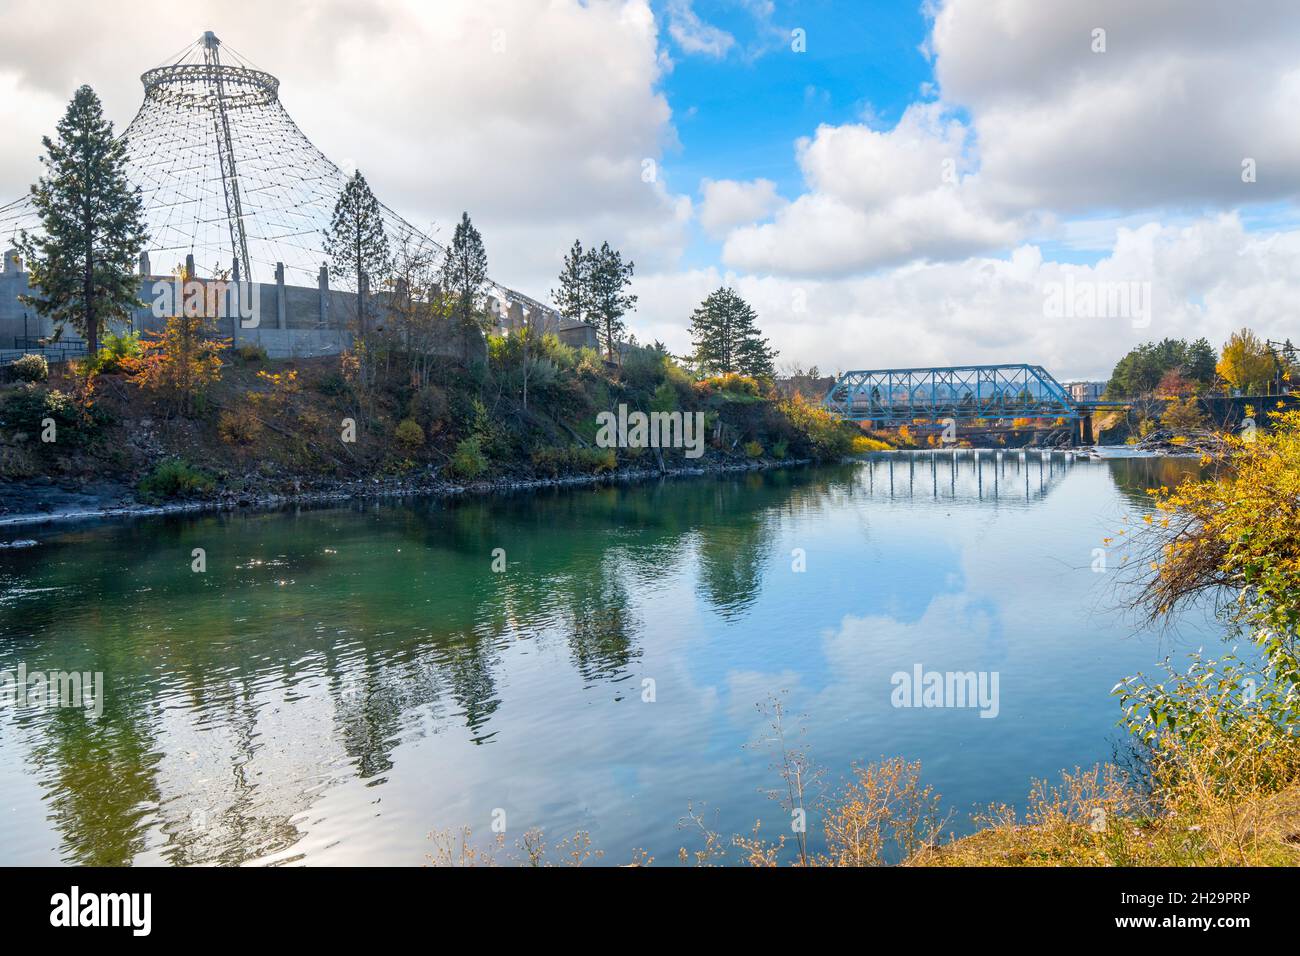 Spokane River dans le centre-ville de Spokane, Washington, États-Unis, le long de Riverfront Park et du pavillon avec le Blue Bridge en vue. Banque D'Images